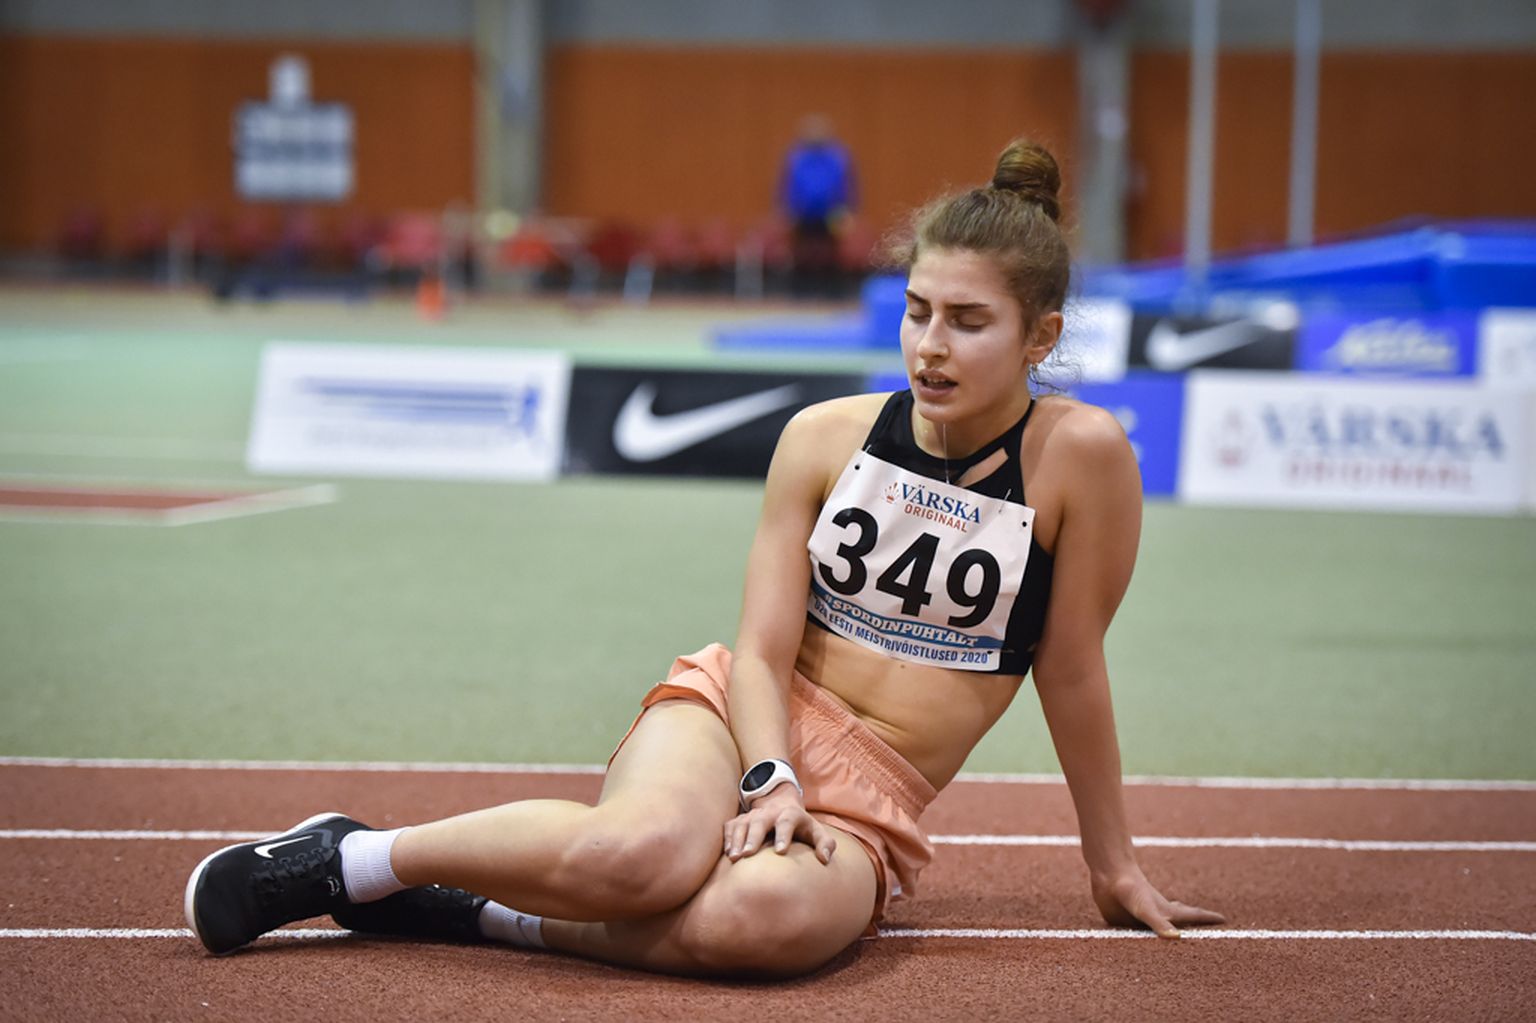 Рекордсменка Екатерина Миротворцева проходила дистанцию в нарастающем темпе и на последнем километре опередила первых на десять секунд.